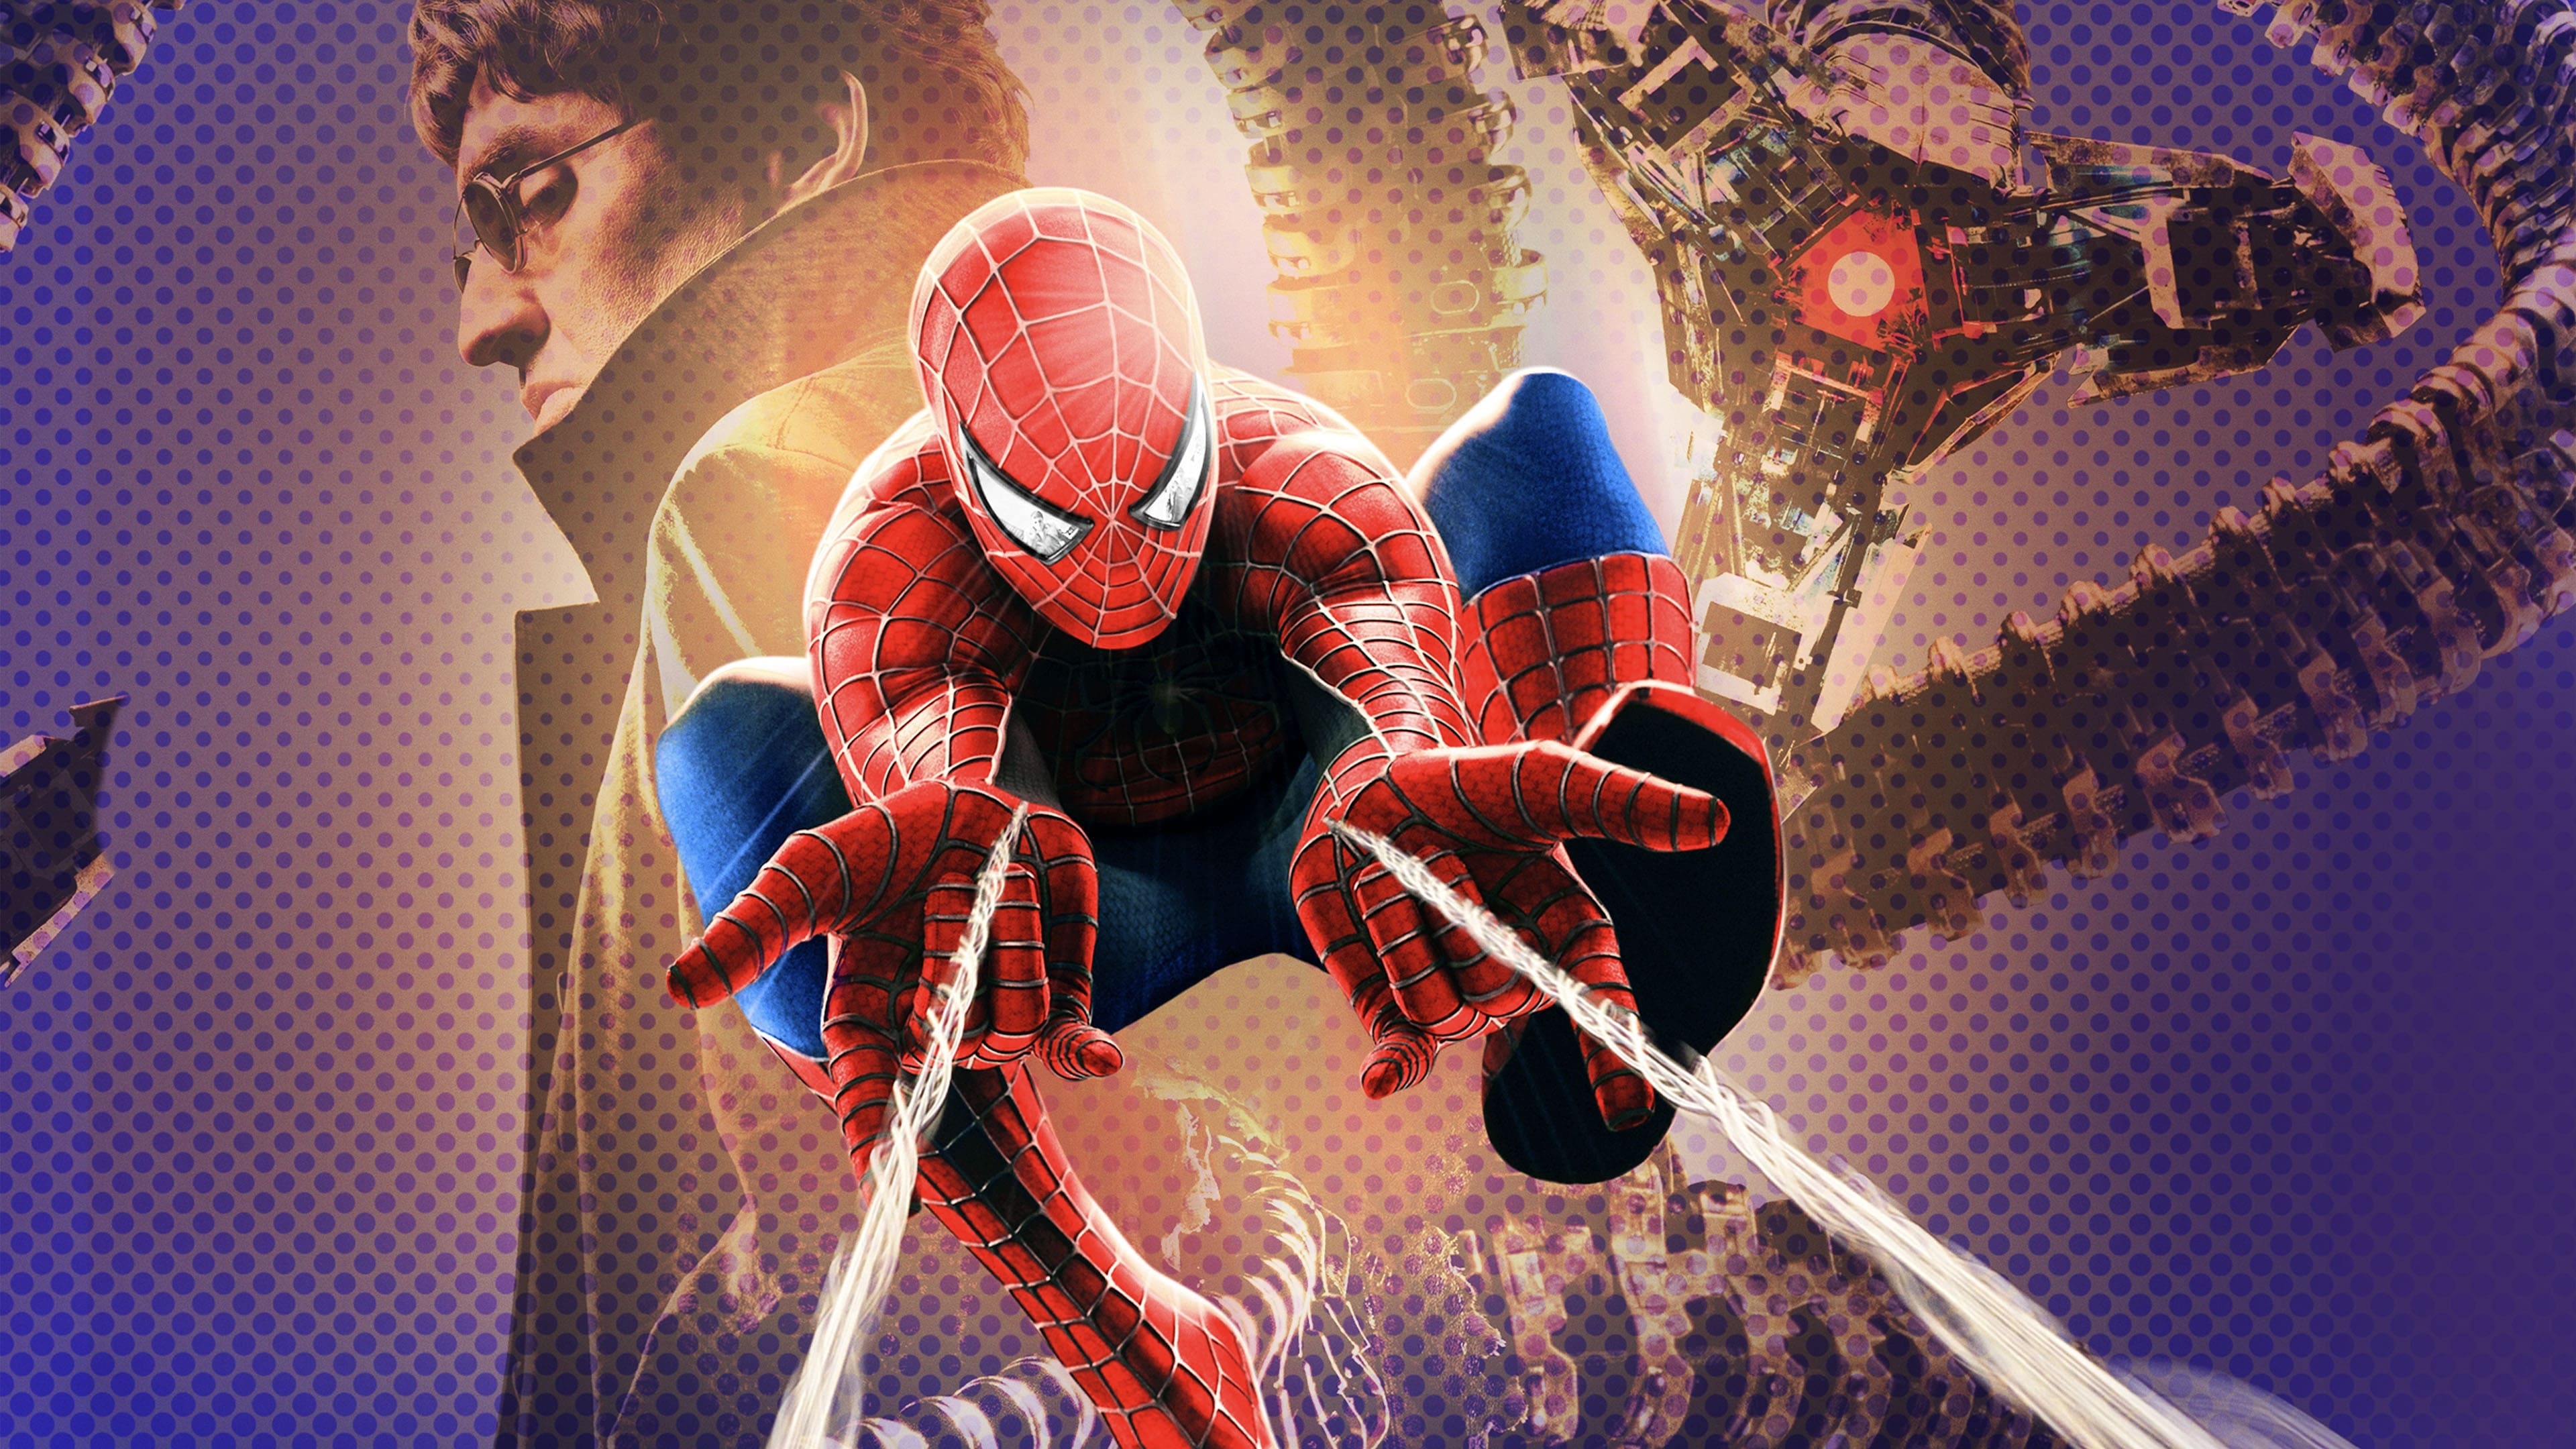 Image du film Spider-Man 2 6dht71hiizj1z5zxoh1fossosnujpg